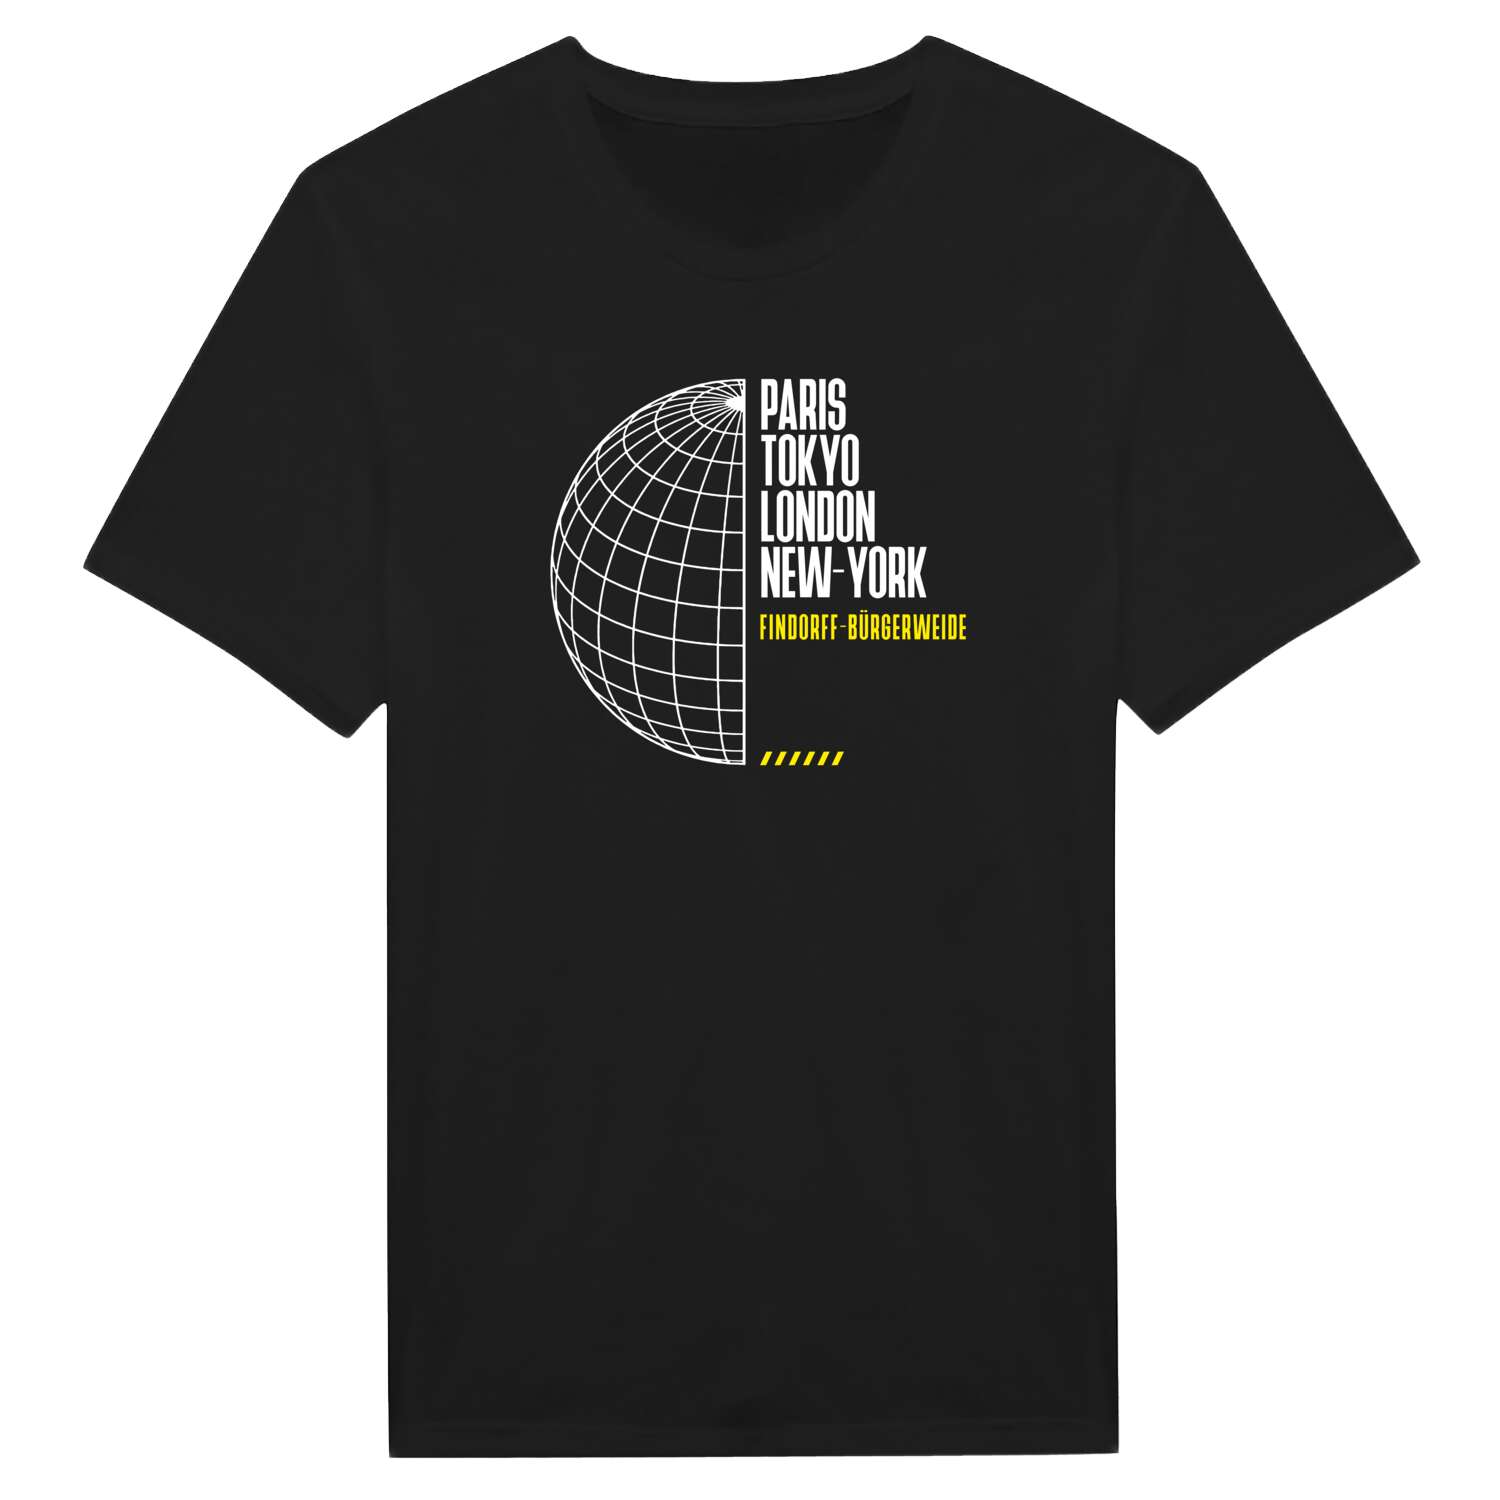 Findorff-Bürgerweide T-Shirt »Paris Tokyo London«